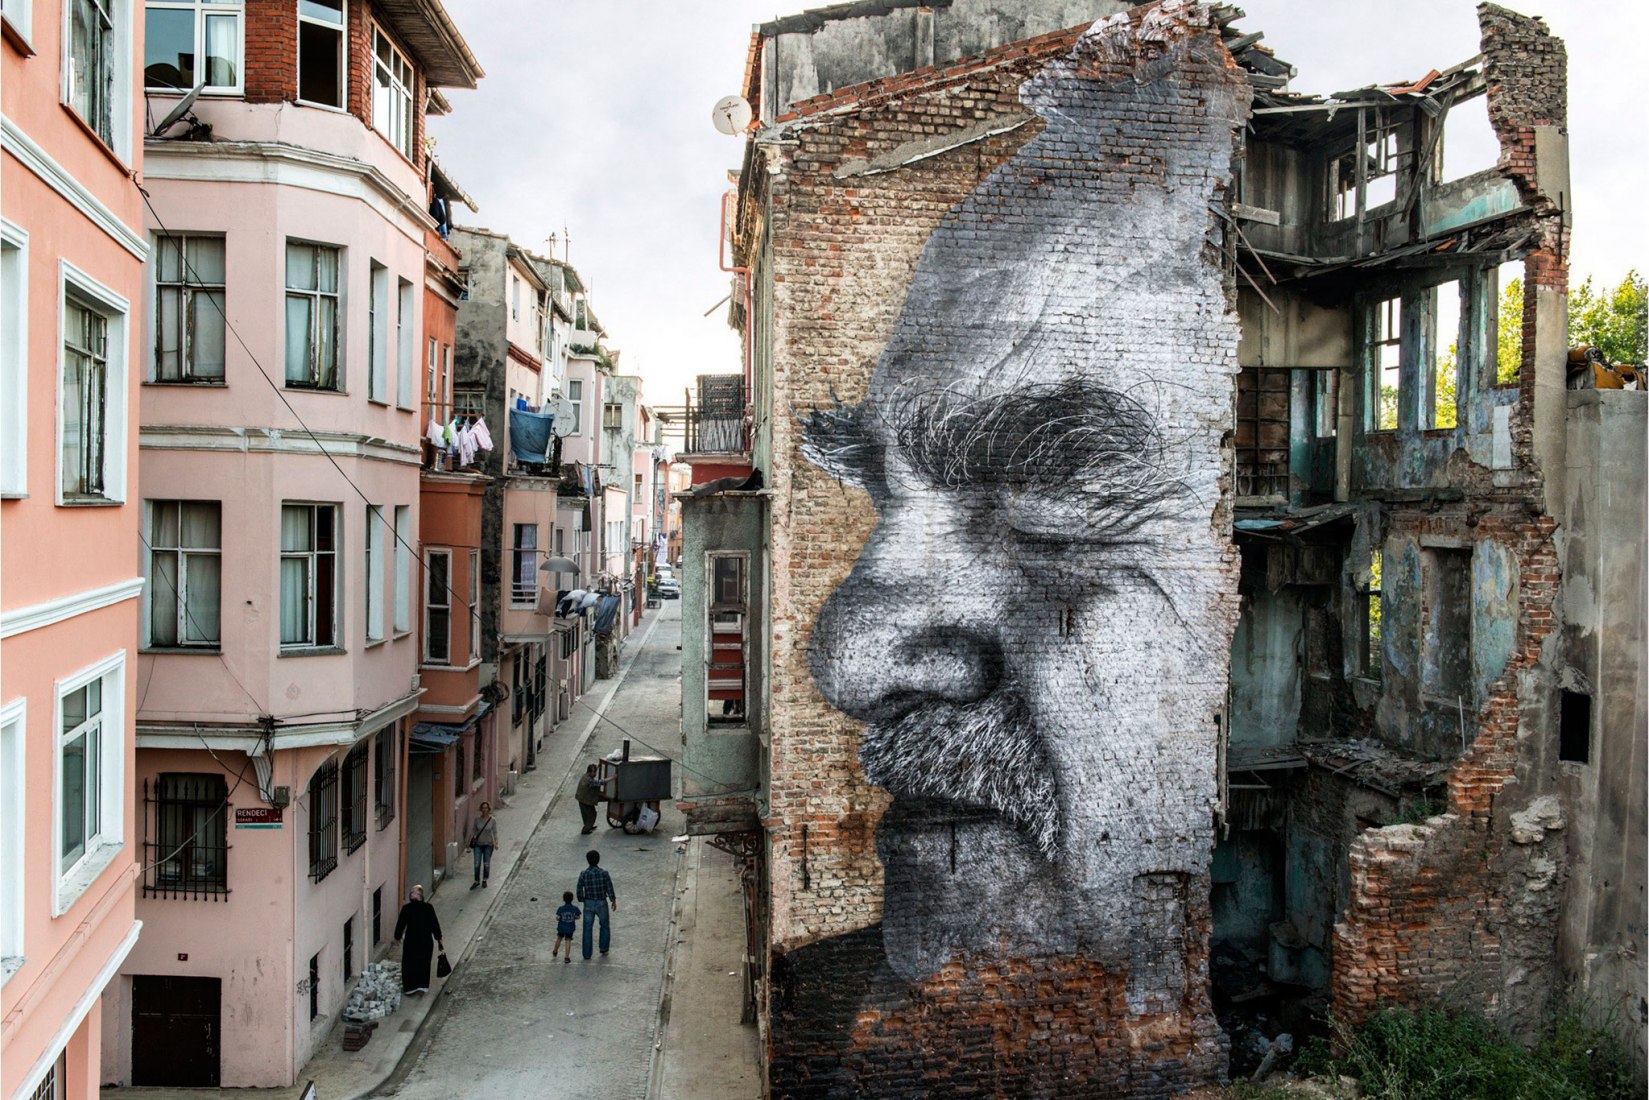 JR, The Wrinkles of the City, Kadir an, Turkey (2015). 